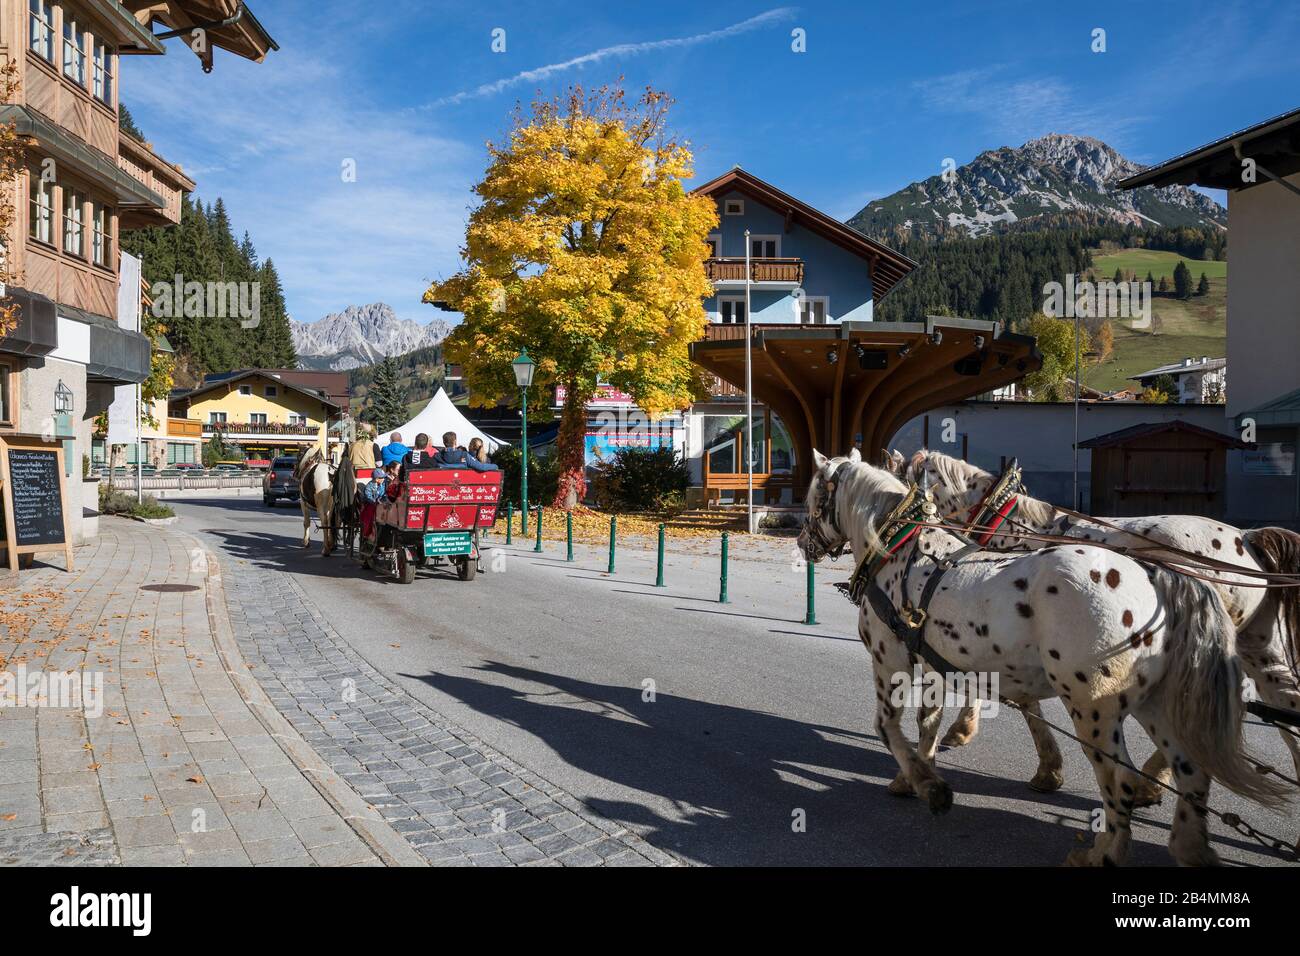 Kutschenfahrt A Filzmoos, Bezirk St. Johann Im Pongau, Land Salzburg, Österreich, Oktober 2019 Foto Stock